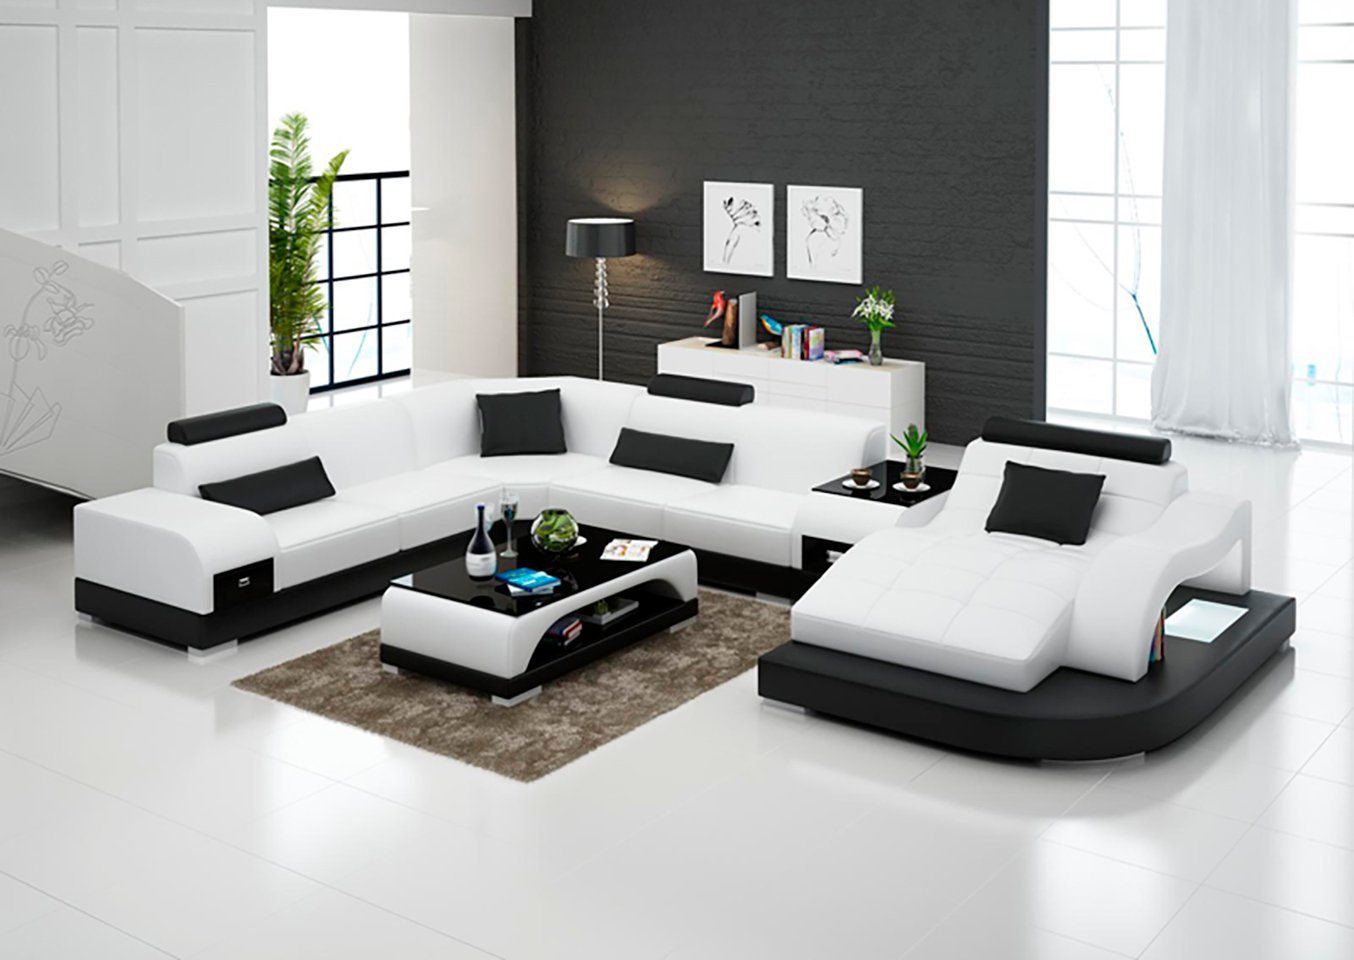 JVmoebel Ecksofa »Leder Eck Sofa Eck Wohnlandschaft Design Modern Couch  Sofas UForm« online kaufen | OTTO